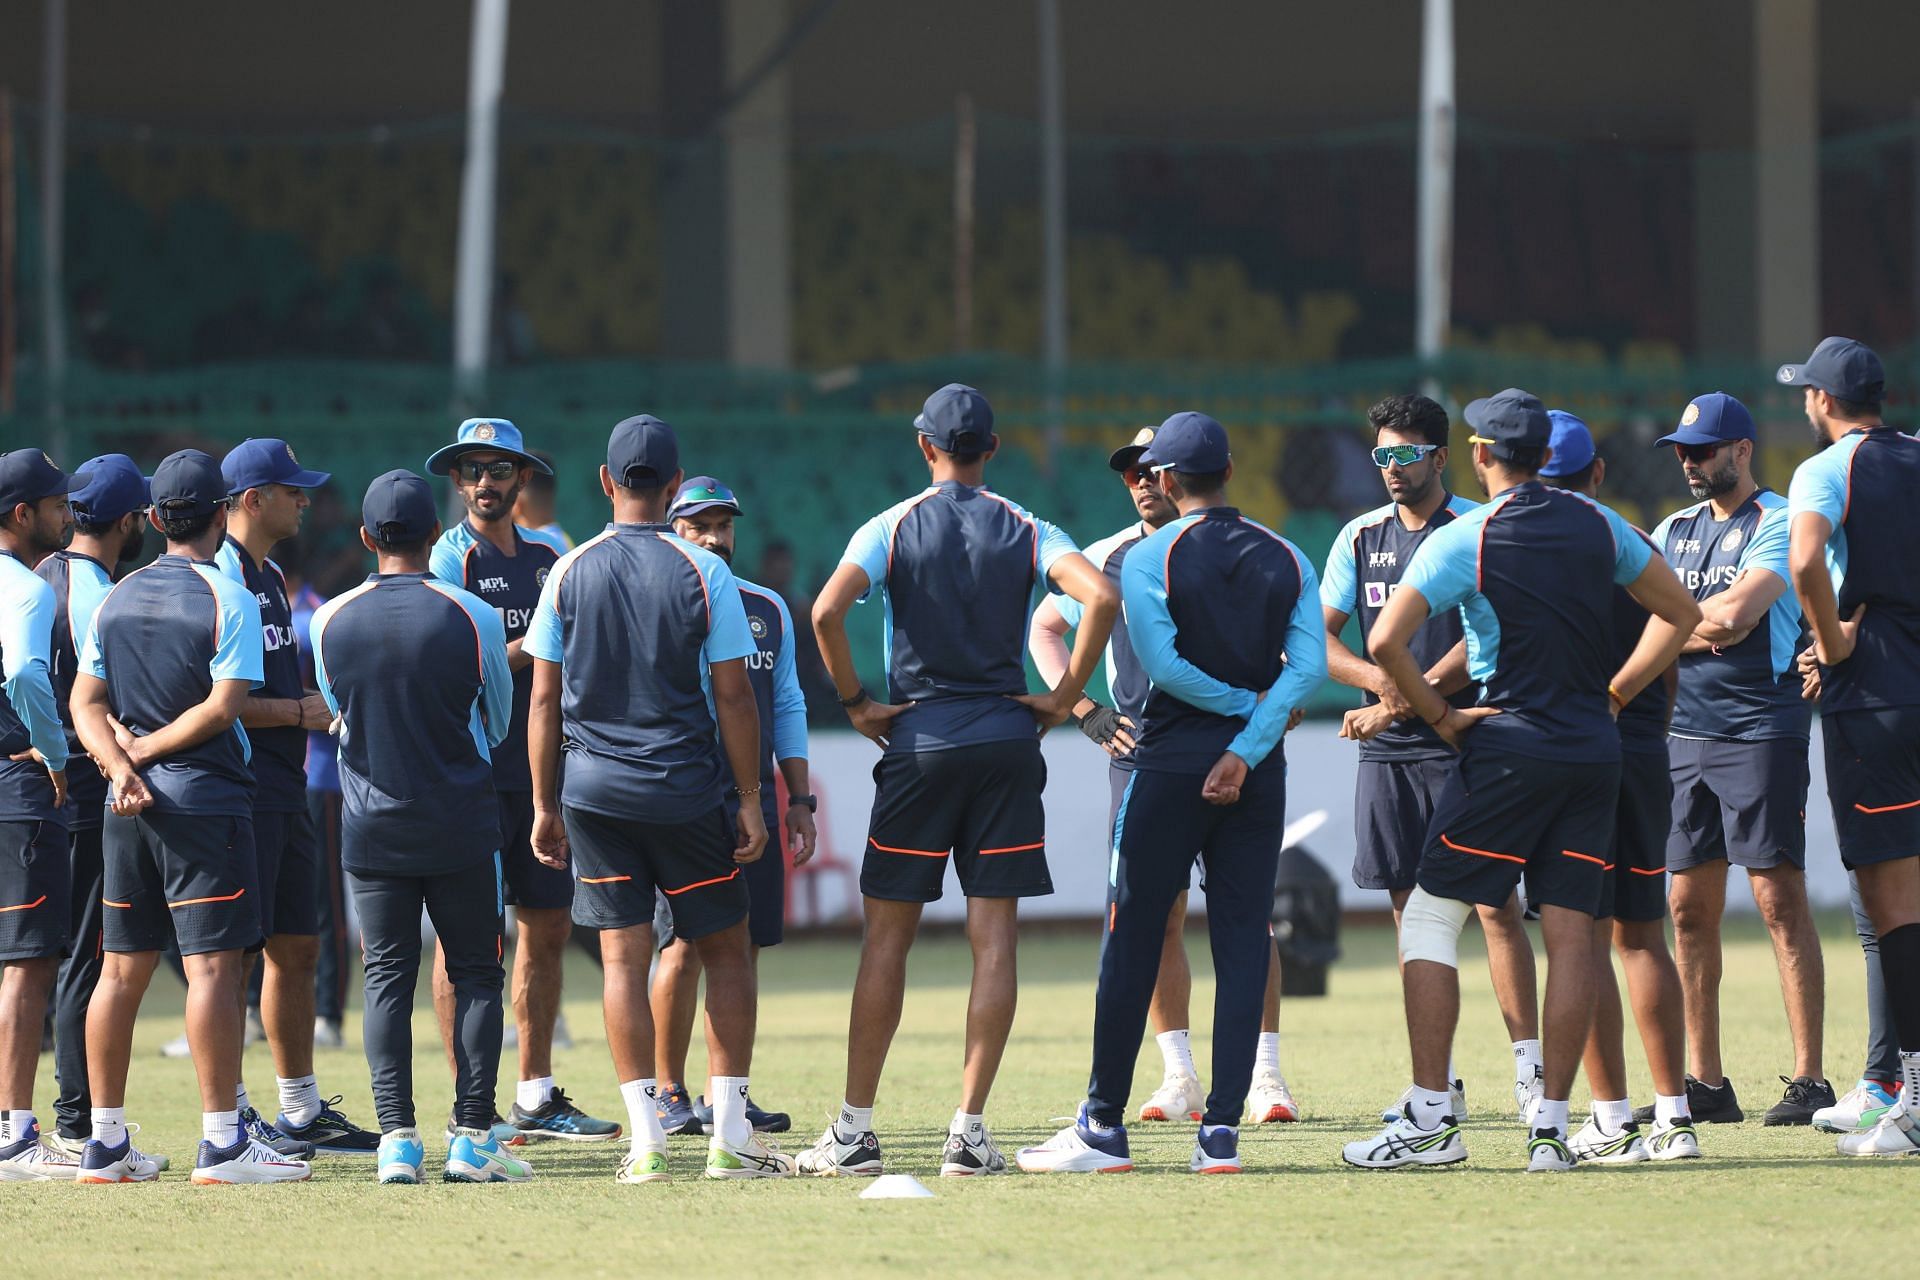 भारतीय क्रिकेट टीम प्रैक्टिस के दौरान (Photo Credit - BCCI)